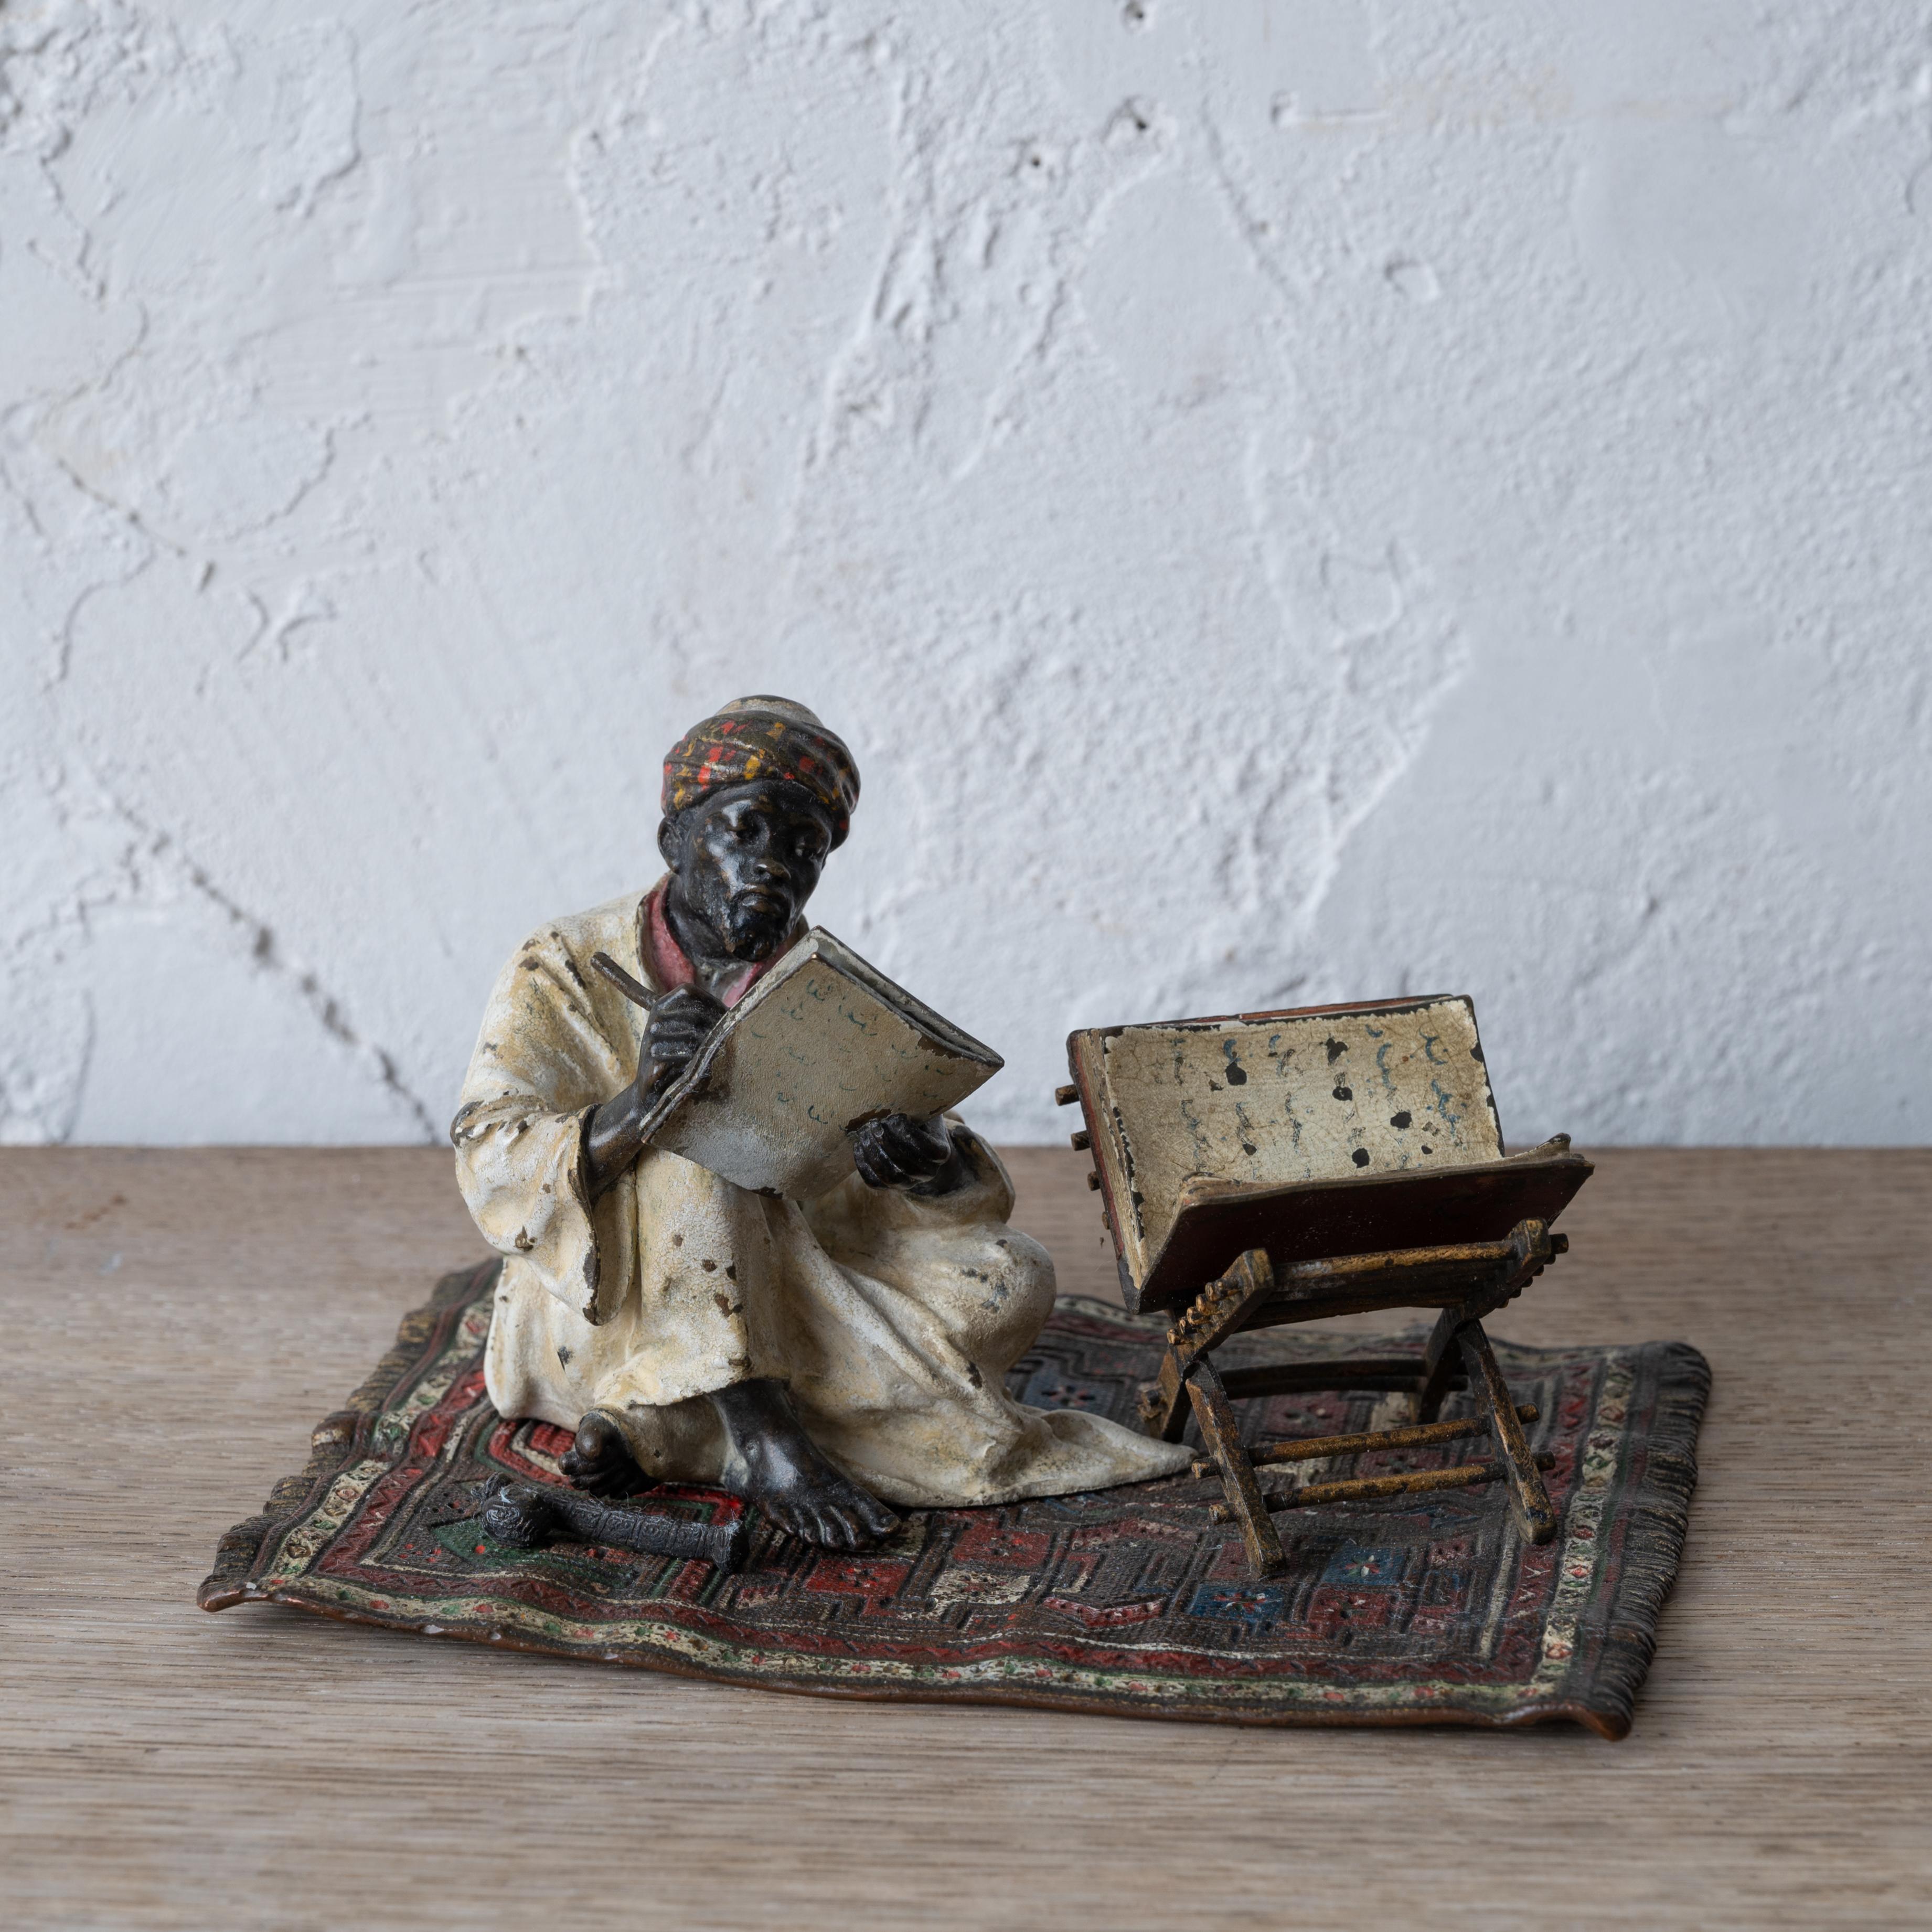 Franz Xavier Bergman
(Autrichien, 1861-1926)

Bronze orientaliste peint à froid représentant un scribe arabe du Coran sur un tapis, Vienne, vers 1880.

La marque d'enregistrement Geschützt est présente sur le dessous de la figurine. Correspondance